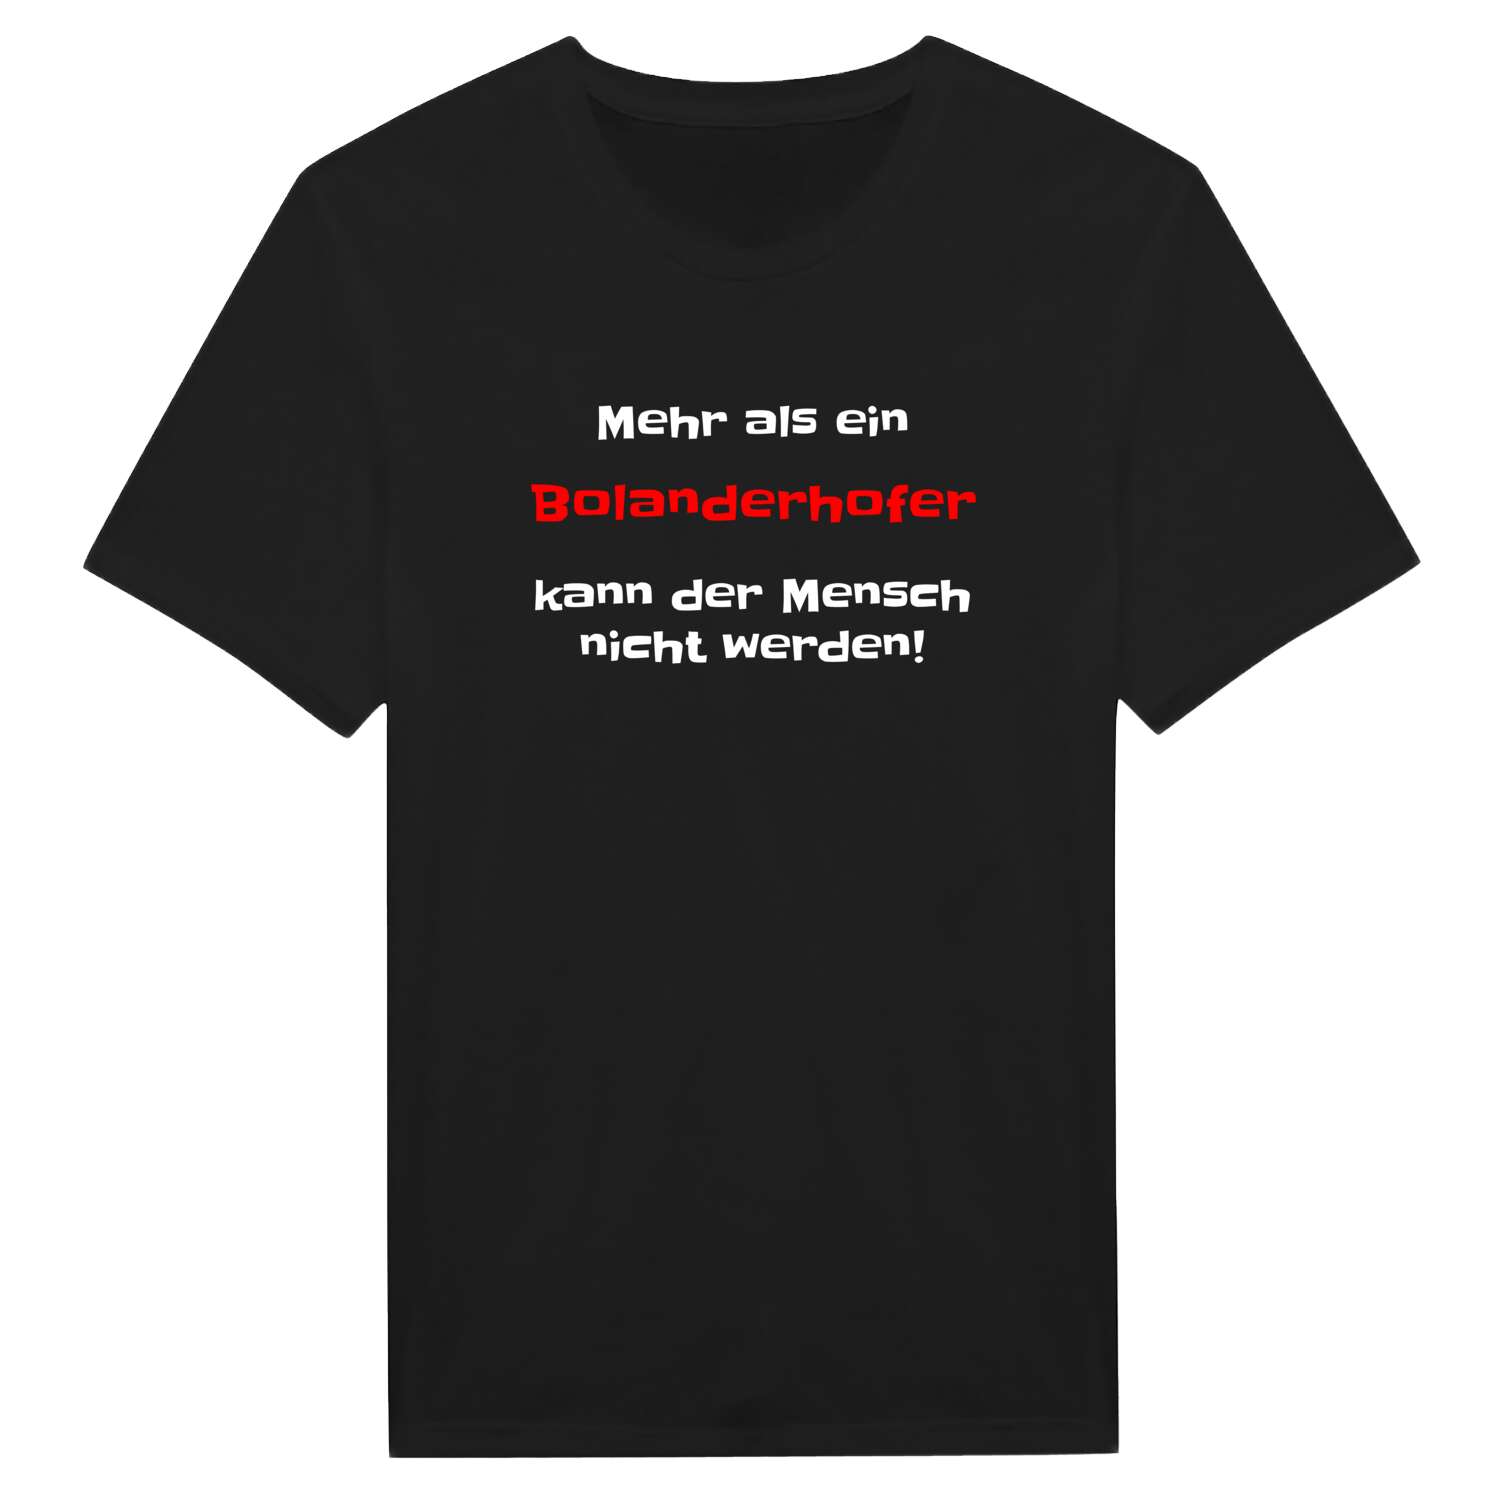 Bolanderhof T-Shirt »Mehr als ein«